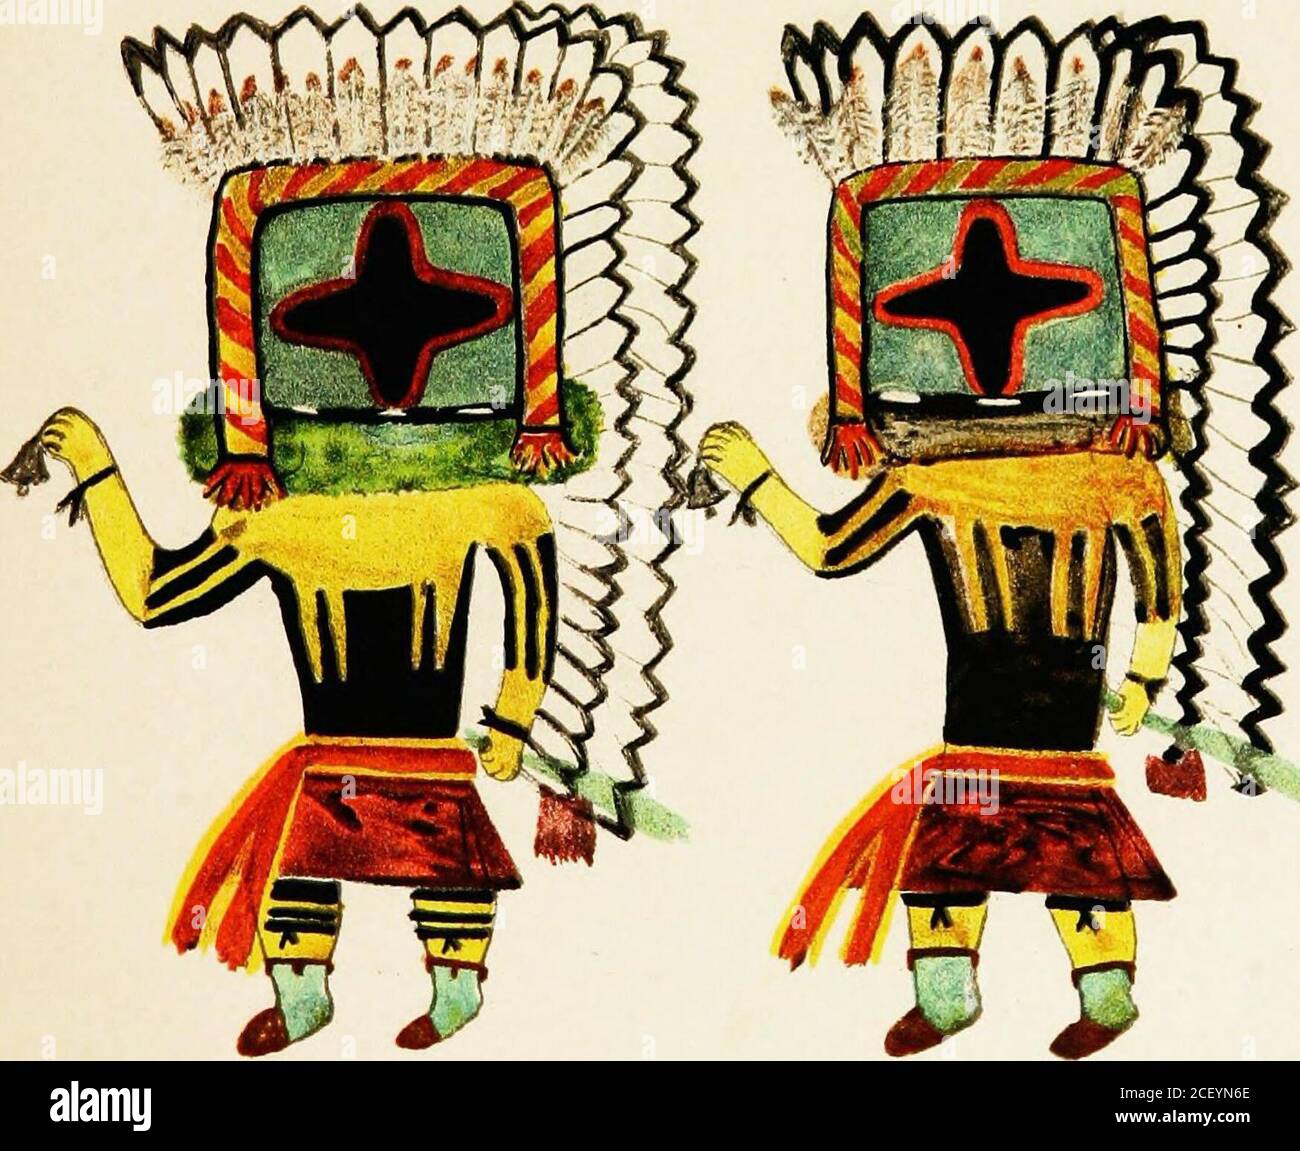 . Hopi Katcinas dessiné par des artistes autochtones. OWANOZROZRO GOTO WALPli. GOTO lORAiBh 90 H(.)P1 KATCINAS [ÉT. axn. 21 KOKYAN WtjQTl(plate XXIX) quand les Kutikoii katcinas dansaient l'Aiikwanti il a accom-panié les danseurs une personnalité appelée wtiqti, grand-mère femme, et comme la grand-mère de Piiukofi est Kokyan wuqti (Spider woman), ainsi wiiqti est censé être un autre nom pour ce. Le masque est parfaitement noir, avec des yeux crescentiques jaunes et des cheveux blancs. Elle porte une couverture en L foncé, sur laquelle est recouvrant une couverture en cere-monial blanche avec des nuages de pluie et des butteiflj sj^mbols. Elle porte l'asprimg de Banque D'Images